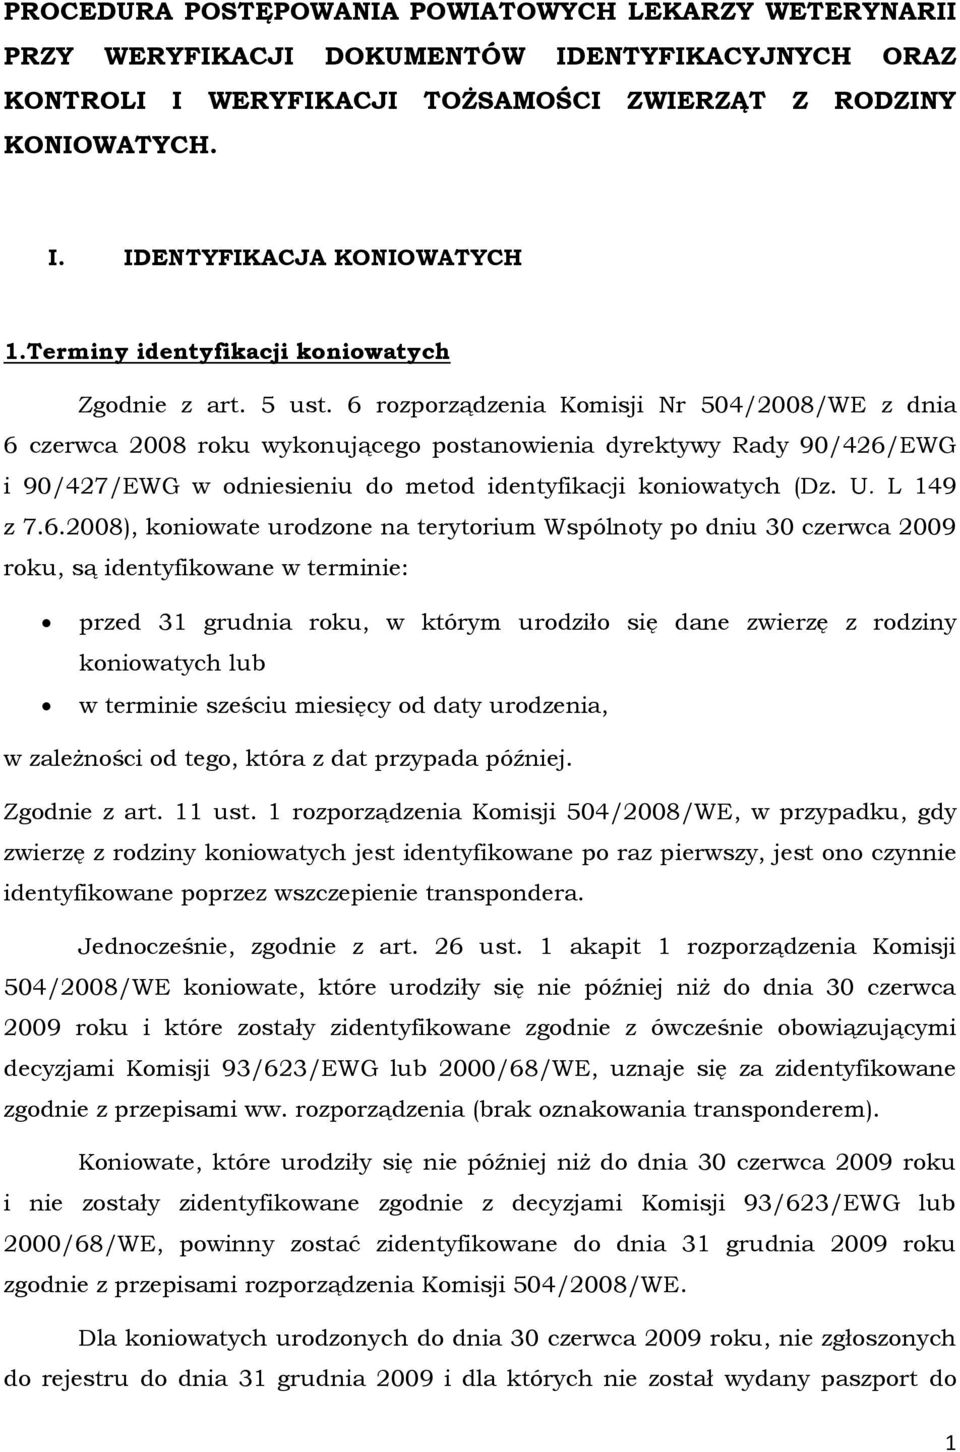 6 rozporządzenia Komisji Nr 504/2008/WE z dnia 6 czerwca 2008 roku wykonującego postanowienia dyrektywy Rady 90/426/EWG i 90/427/EWG w odniesieniu do metod identyfikacji koniowatych (Dz. U. L 149 z 7.